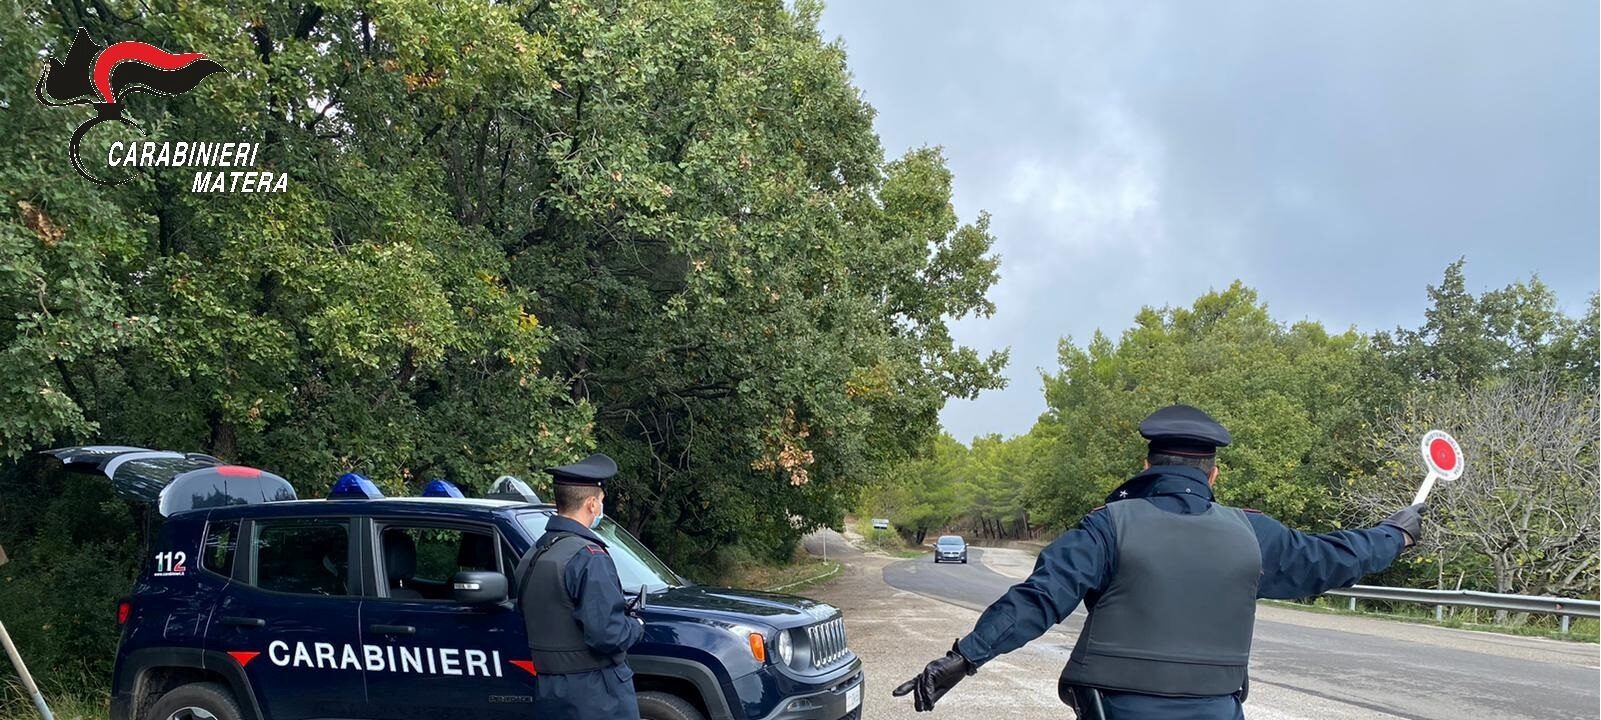 Pomarico, sorpreso in casa con sostanza stupefacente pronta per lo spaccio. 54enne arrestato dai Carabinieri